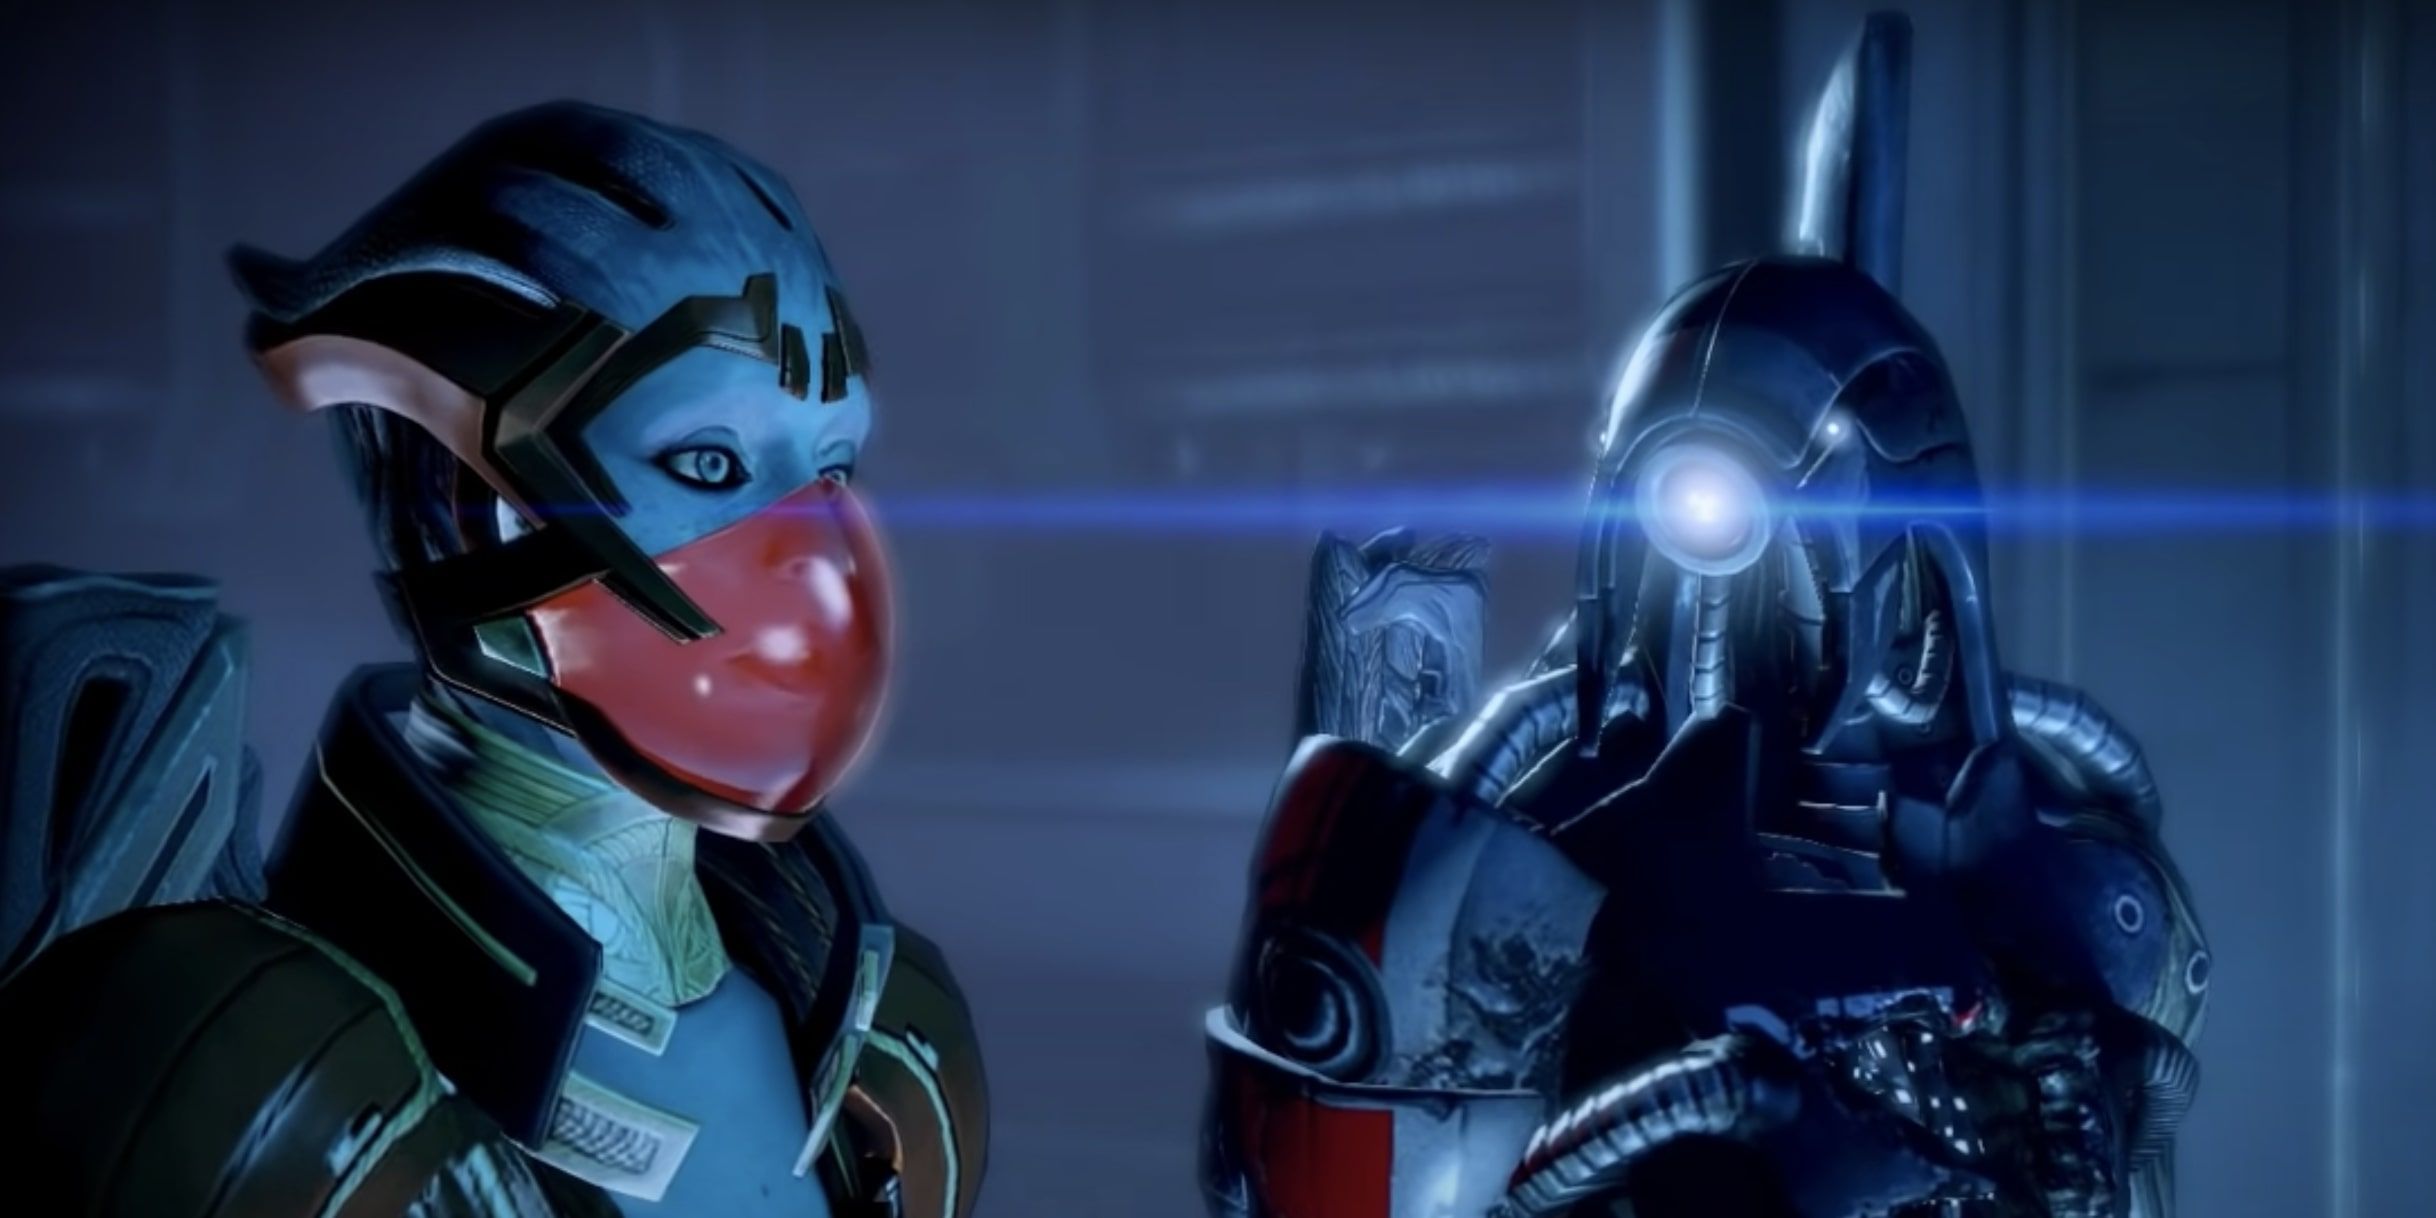 Mass Effect 2 Legion and Samara During Legion's Loyalty Mission